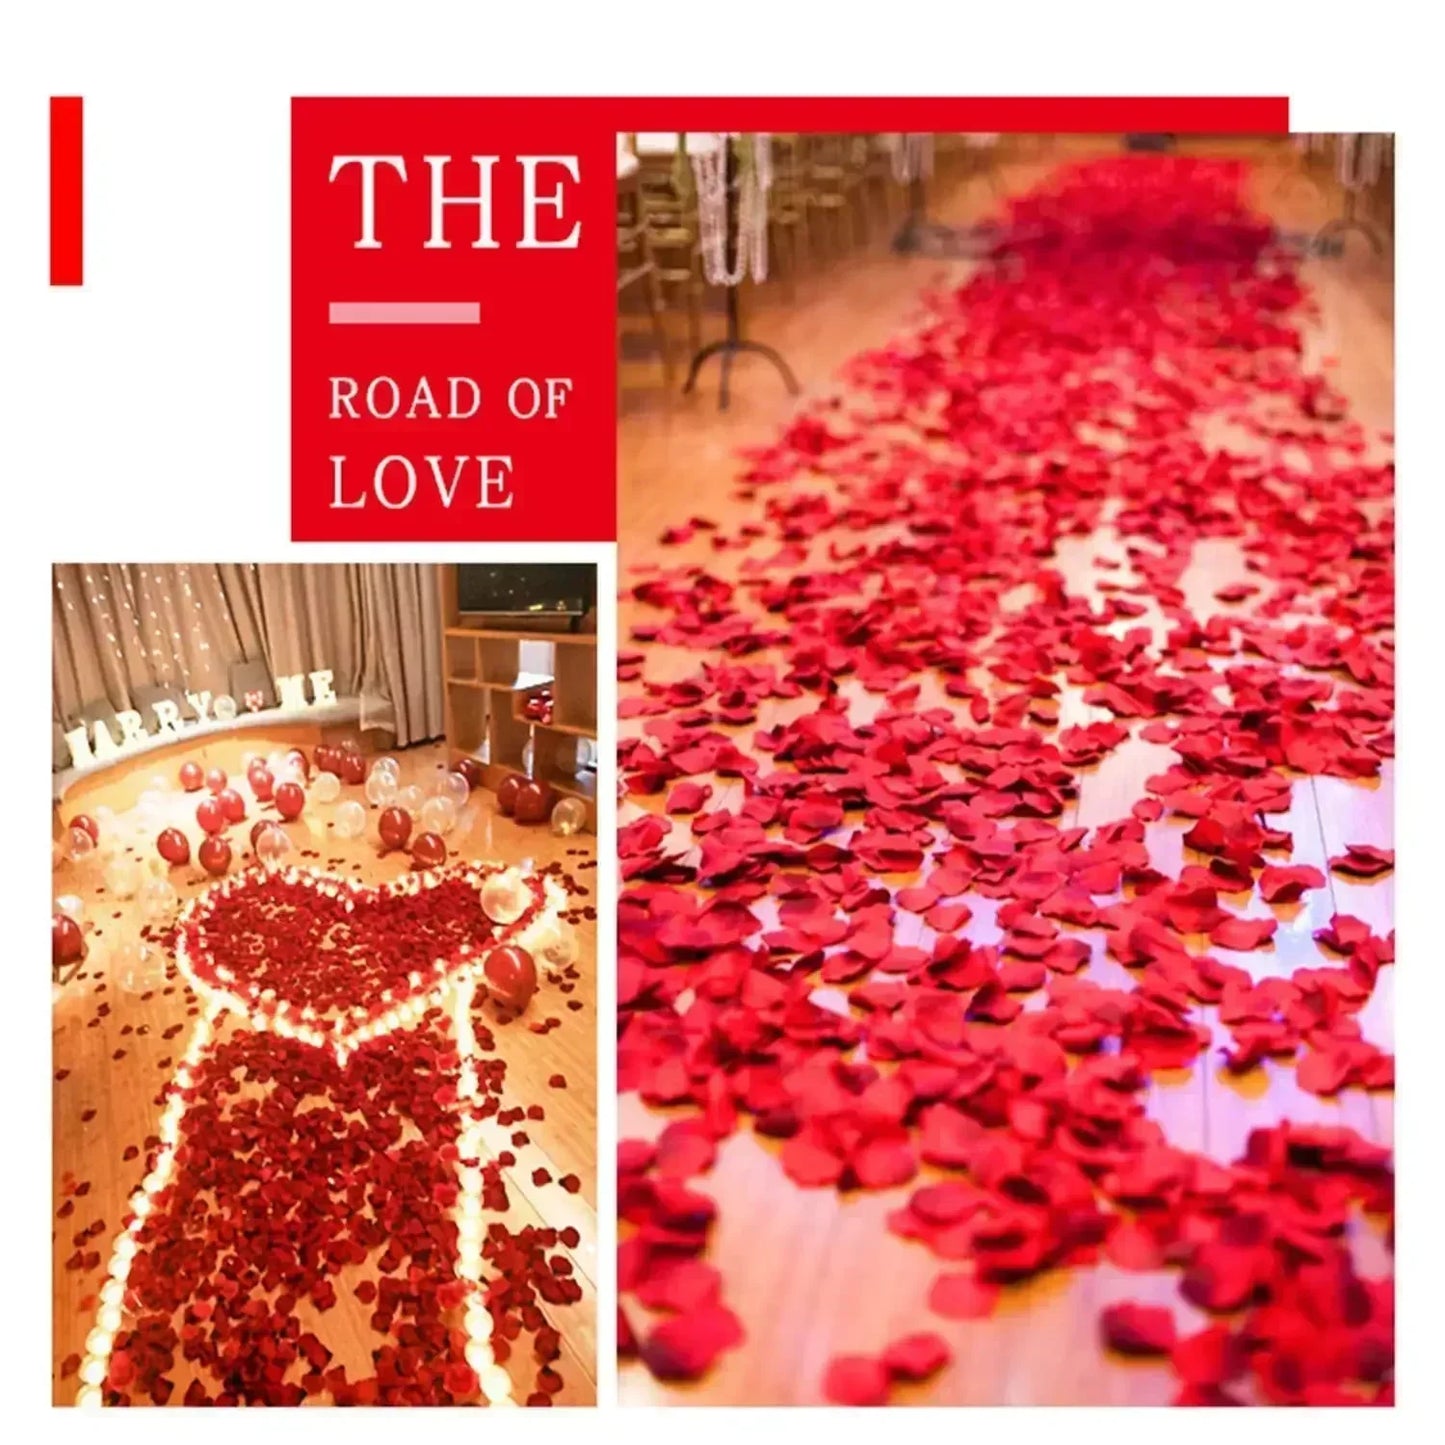 100-2000 pezzi di rosa finti artificiali Petali colorati rose in oro rosso rosso per petalo per feste di nozze romantiche bomboniere